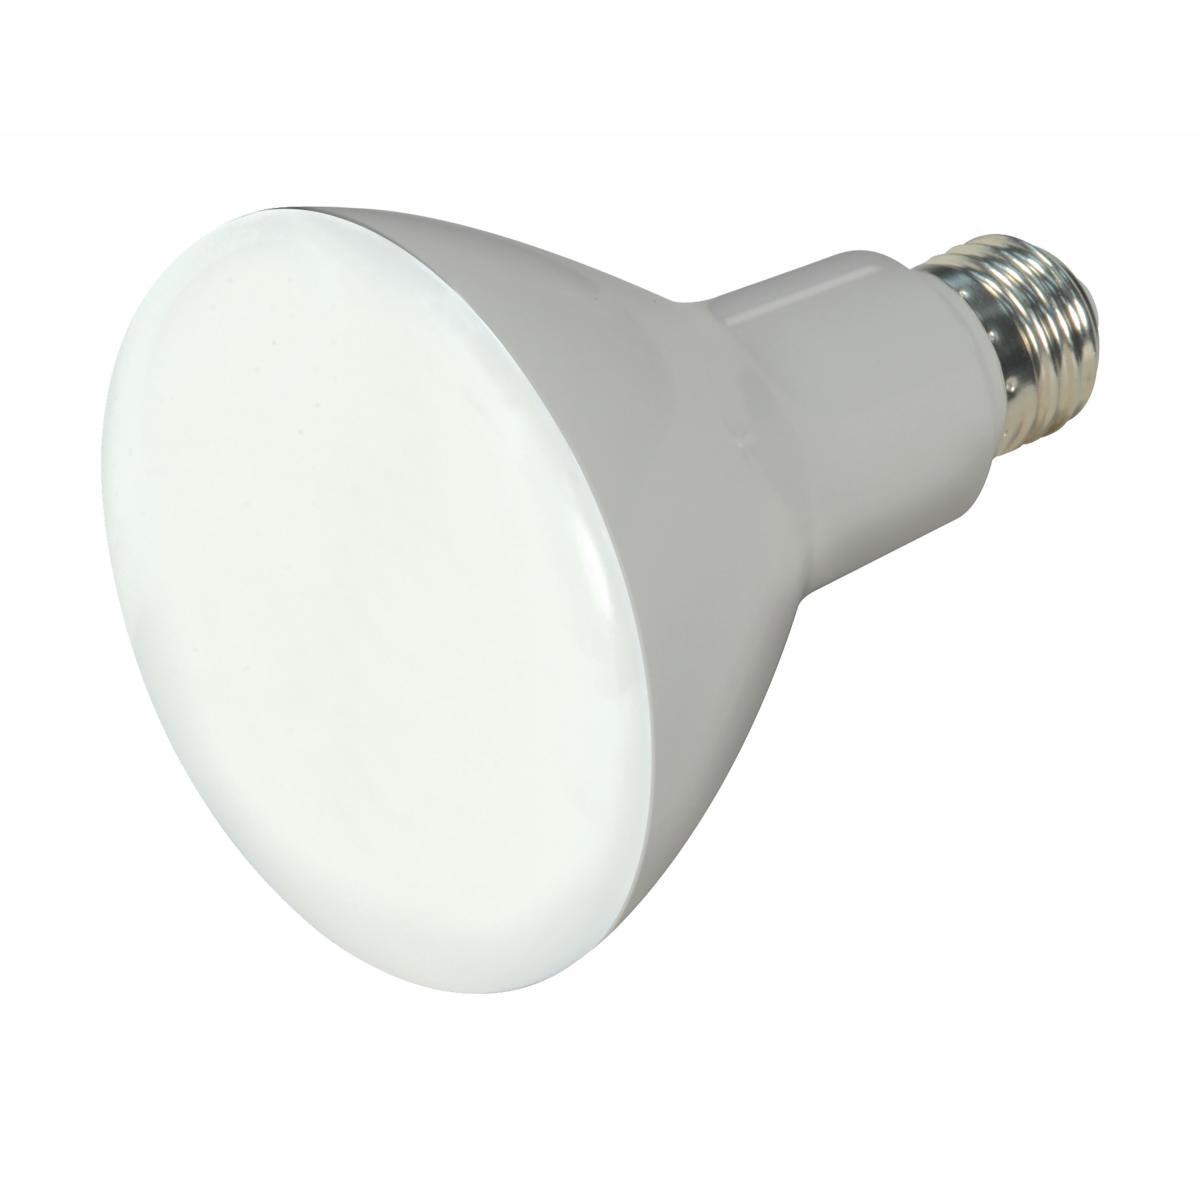 LED R30/BR30 Reflector bulb, 10 watt, 650 Lumens, 4000K, E26 Medium Base, 105 Deg. Flood, Dimmable - Bees Lighting